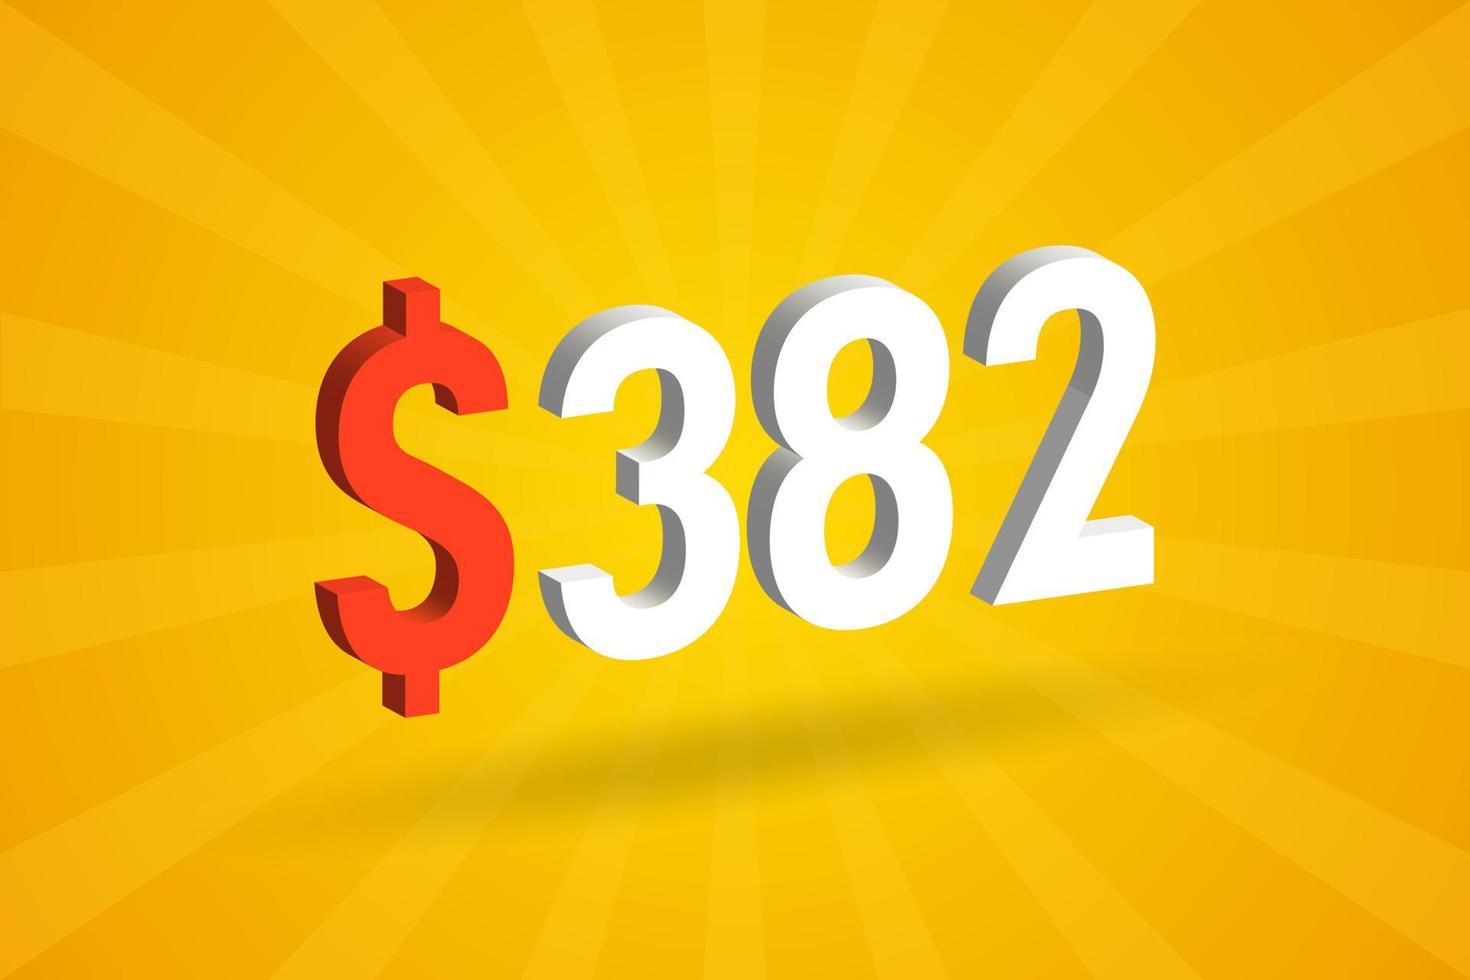 382 USD 3D-Textsymbol. 382 US-Dollar 3d mit gelbem Hintergrund Amerikanischer Geldvorratvektor vektor